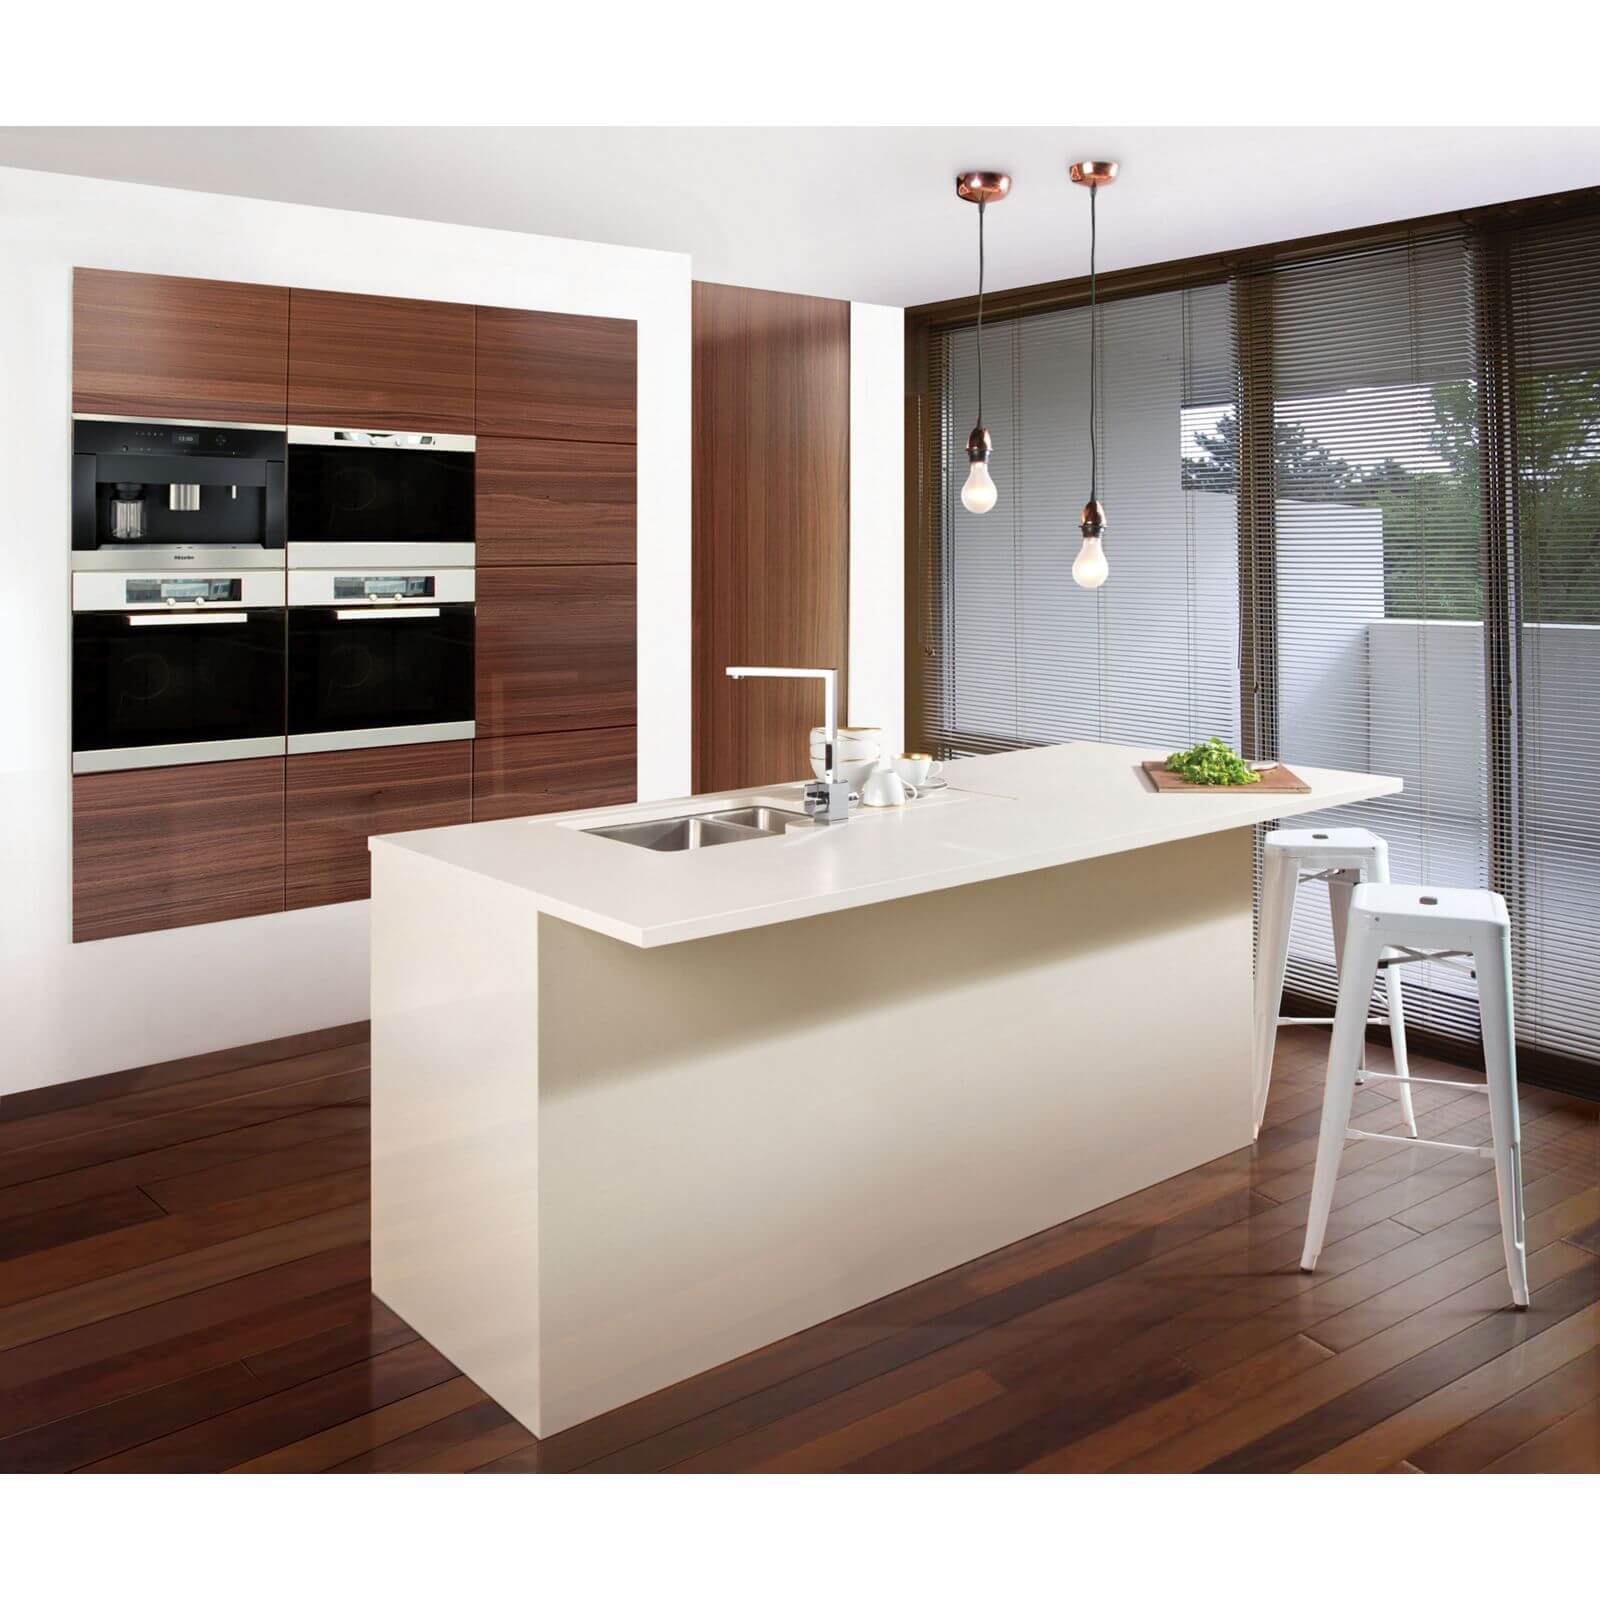 Maia Fossil Kitchen Sink Worktop - 1.5 Designer Right Hand Bowl - 3600 x 650 x 42mm